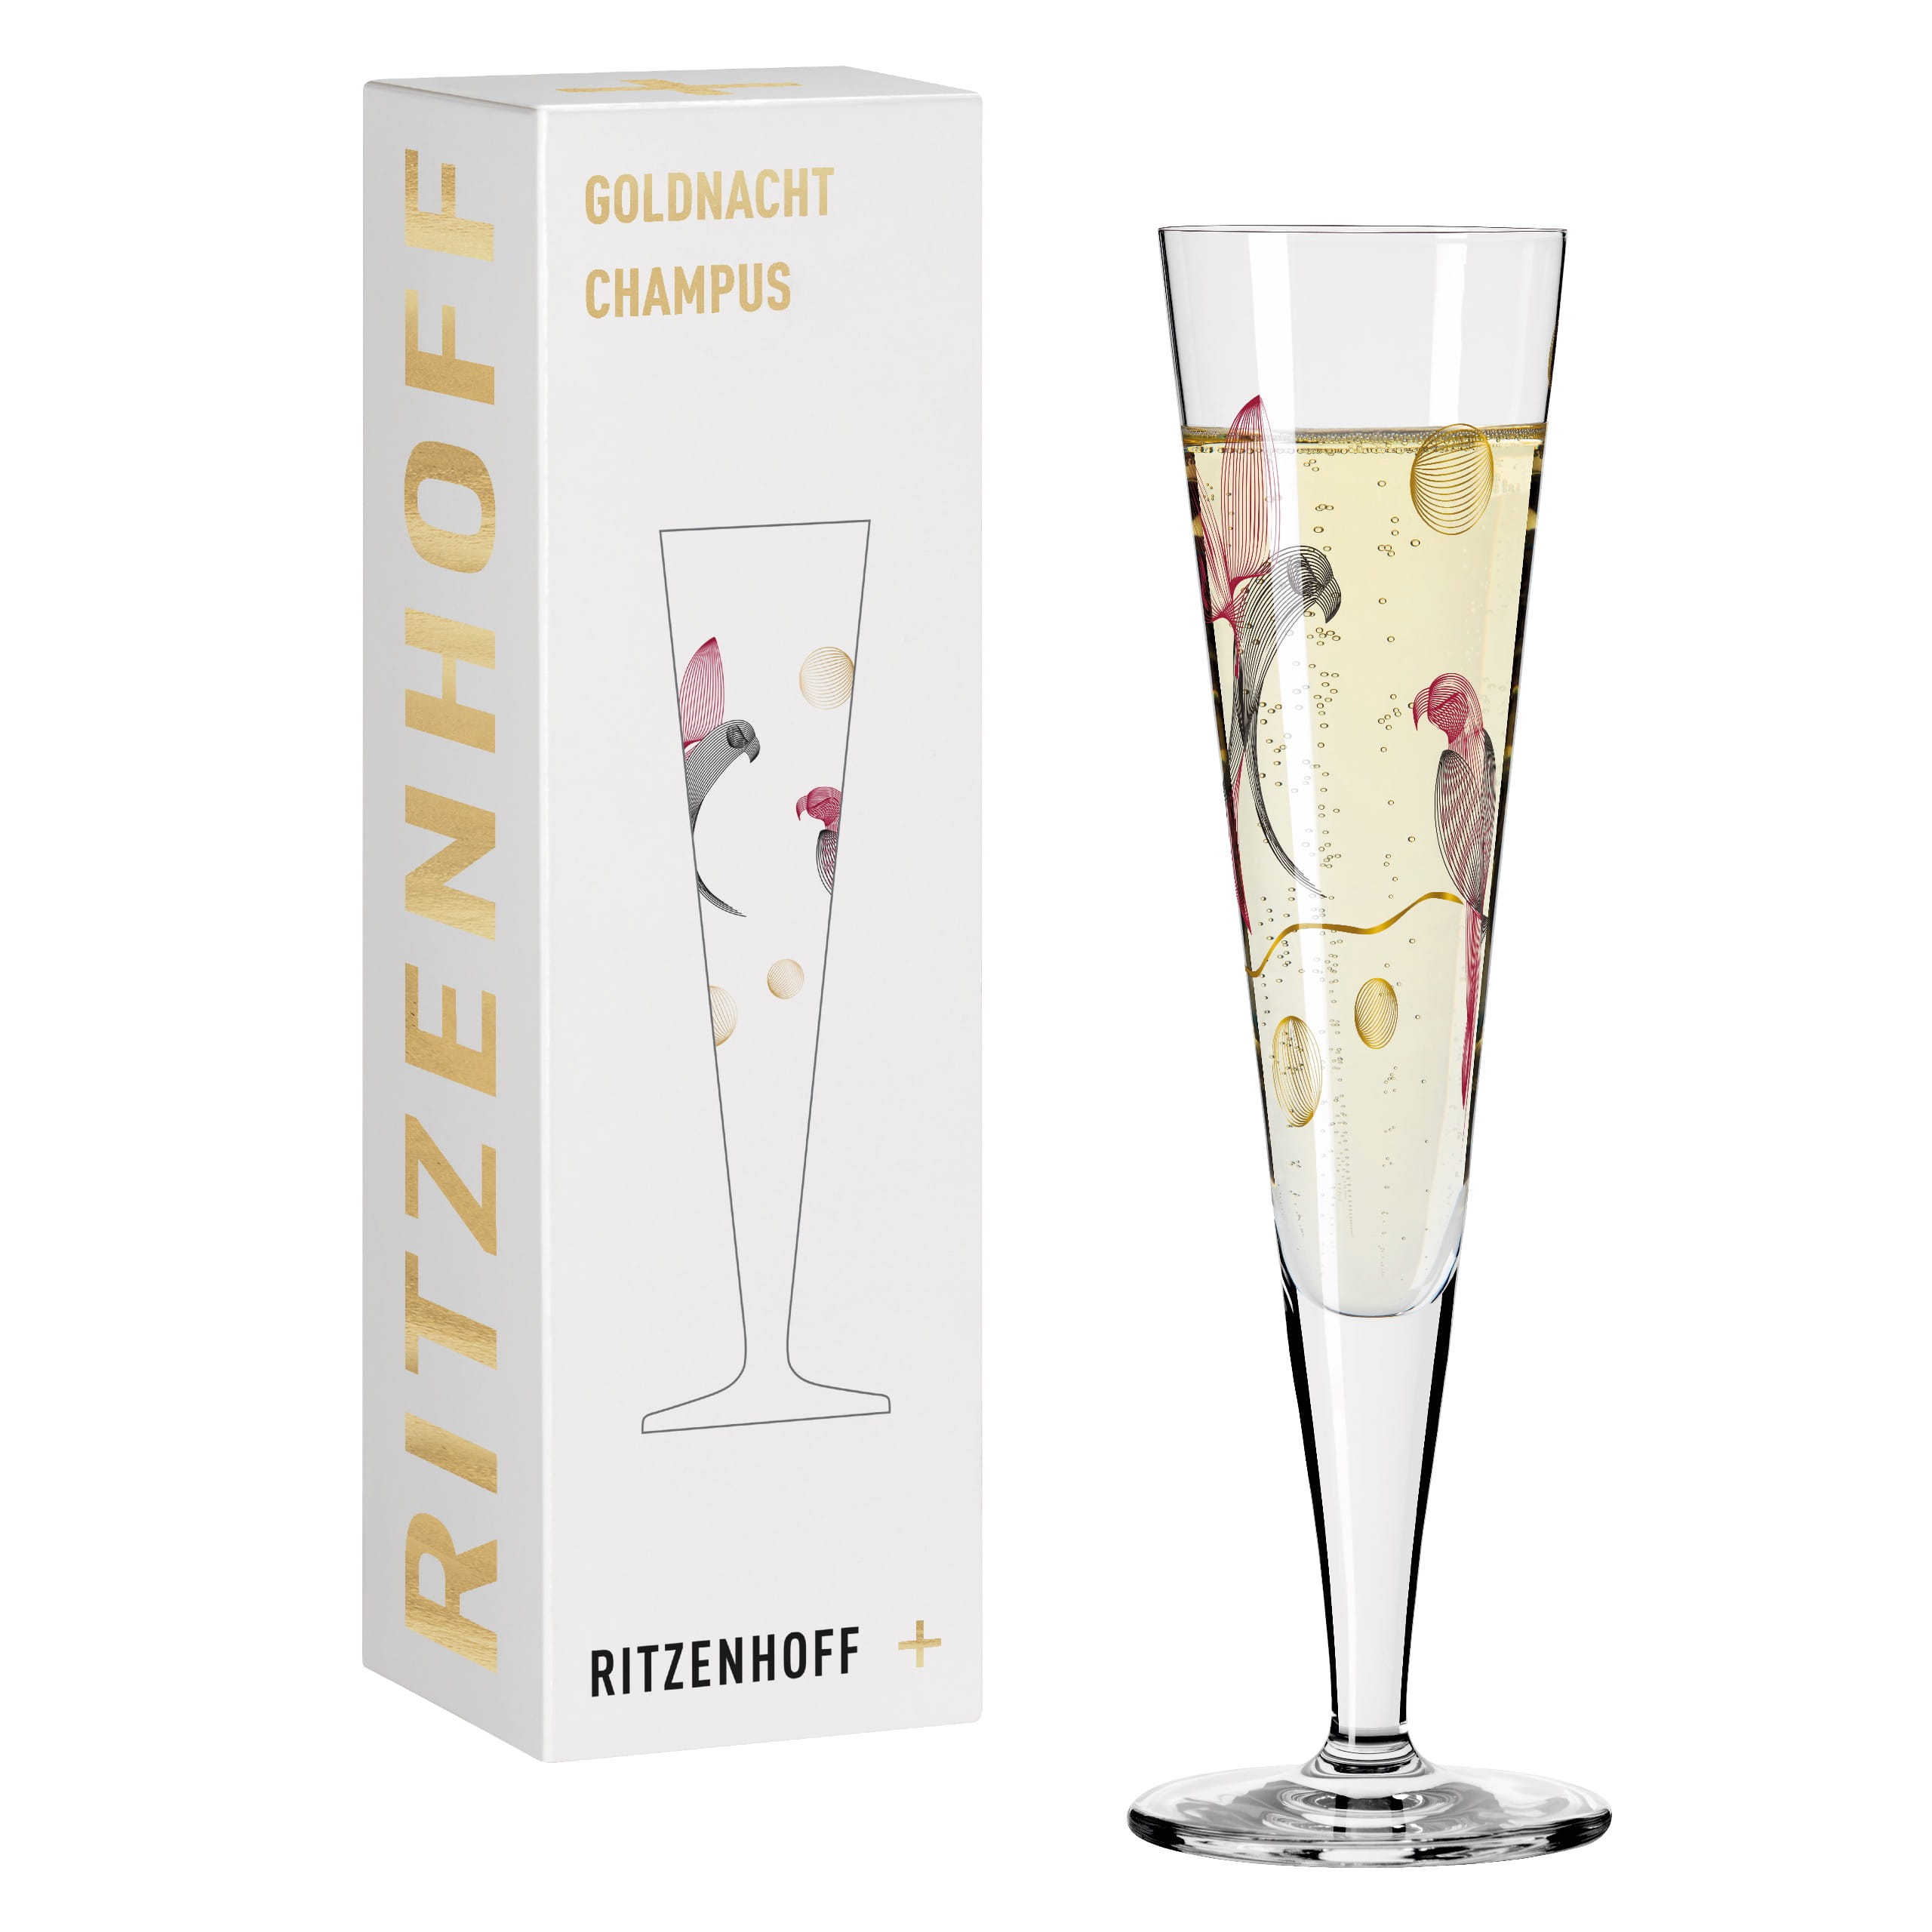 #16 Kordes von Ritzenhoff Goldnacht | Offizieller Champagnerglas Shop Christine online kaufen